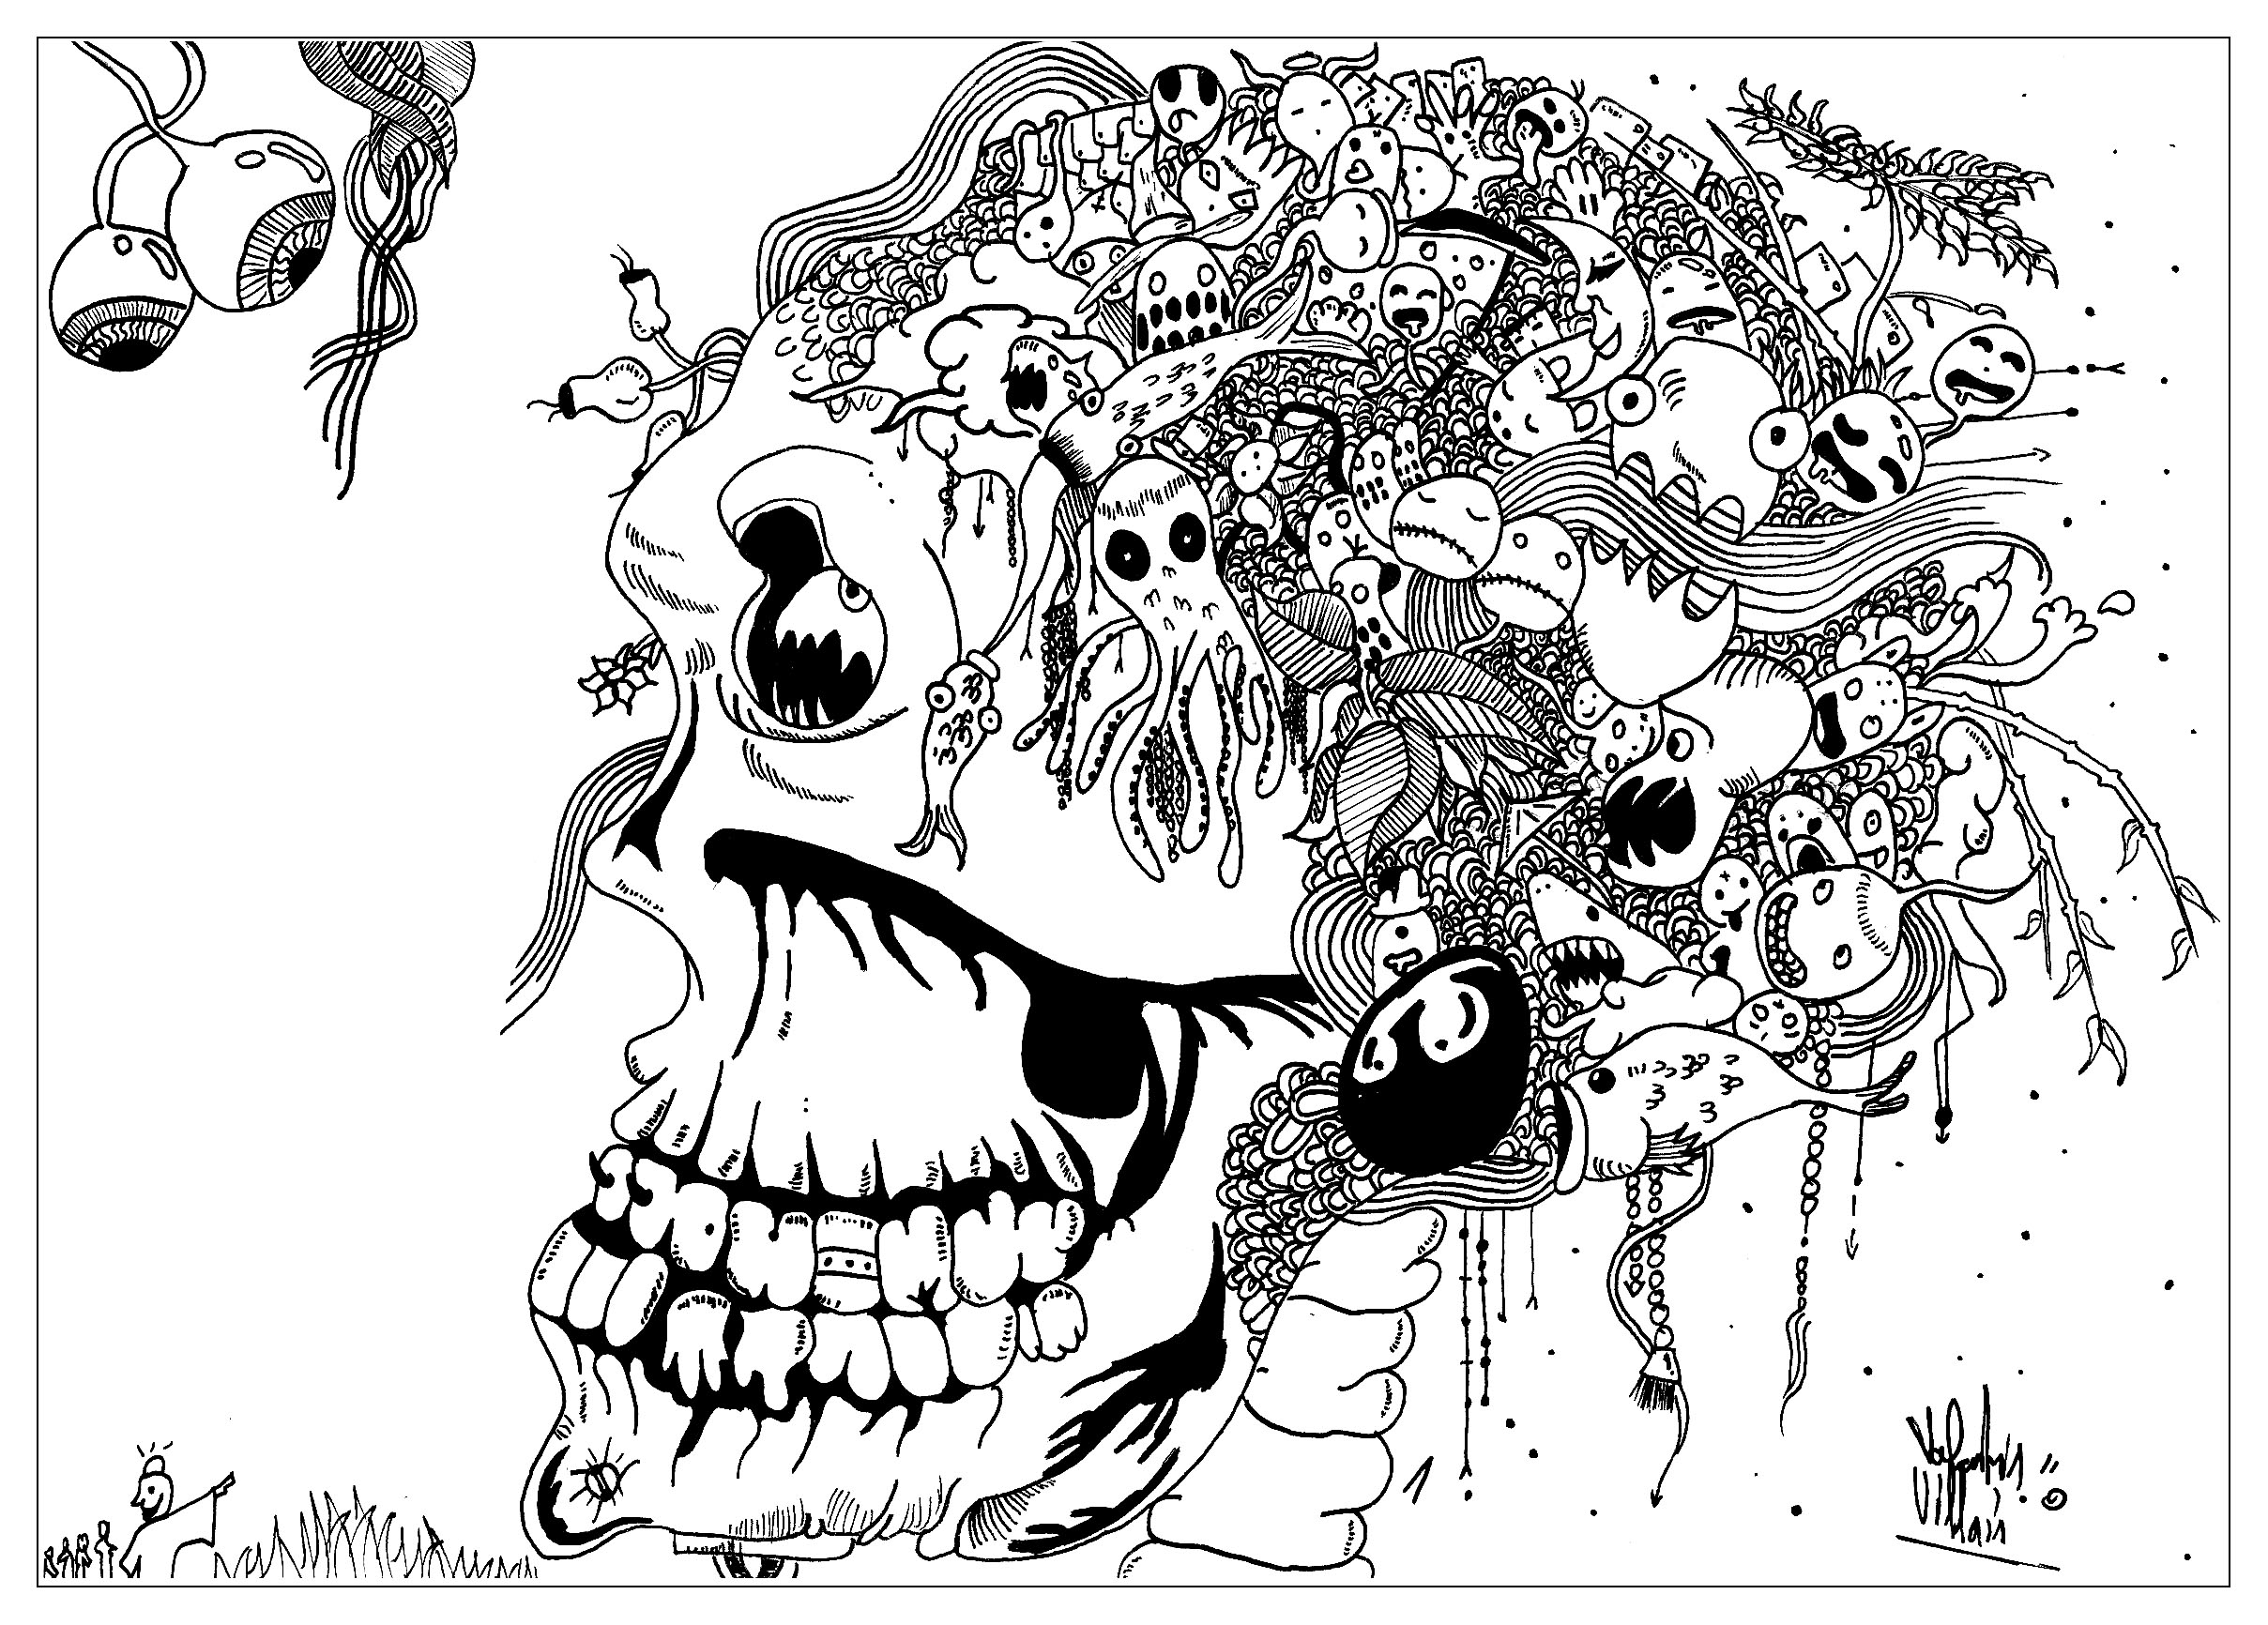 Diferentes criaturas estranhas e maléficas a sair de uma caveira... um Doodle assustador!, Artista : Valentin